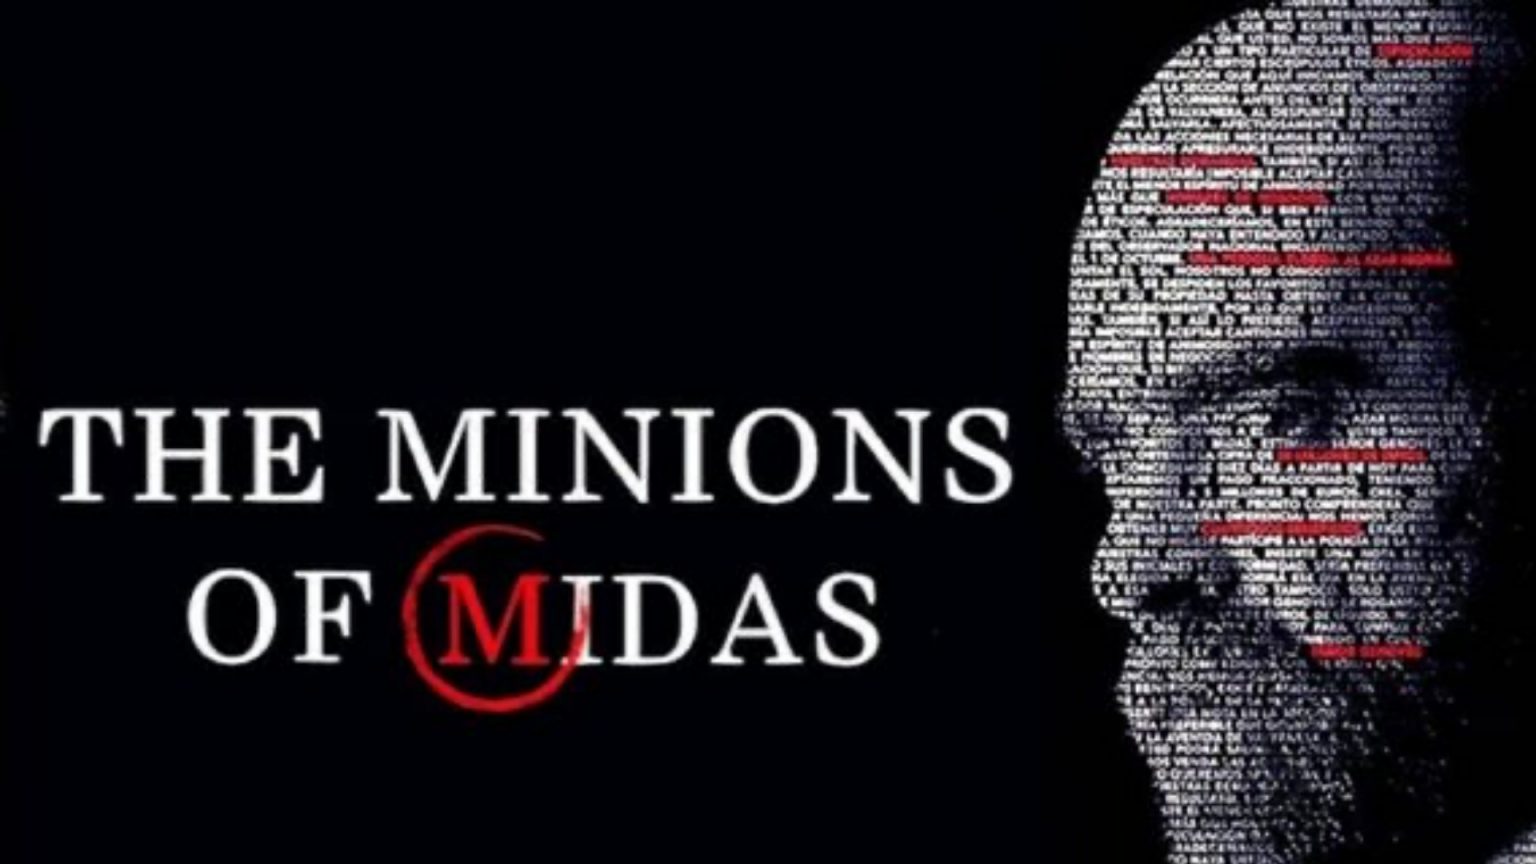 Čo dnes pozerať na streame? The Minions of Midas alebo Transhood